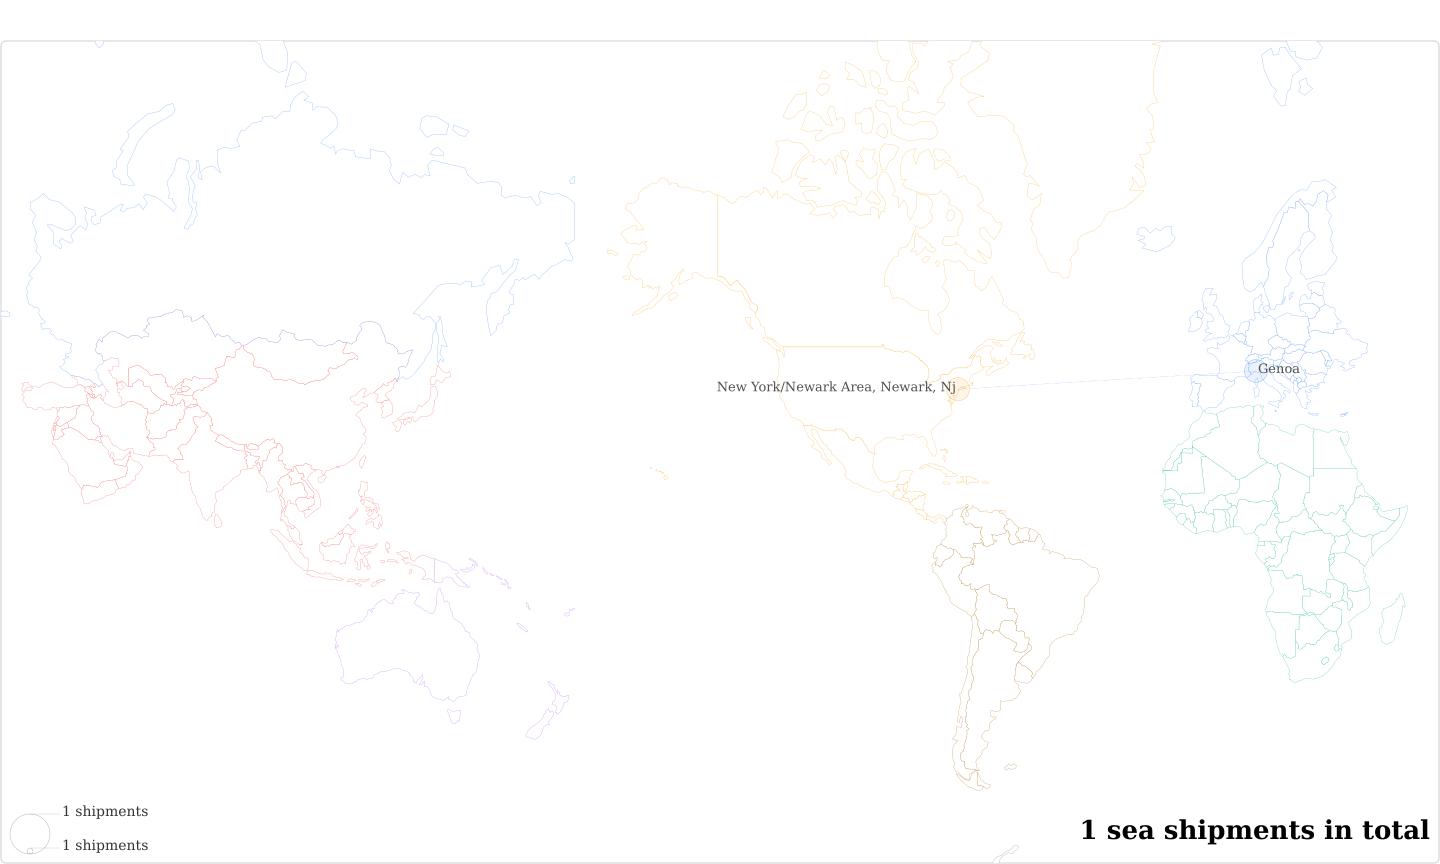 Studio1 Automazionioni Industriali's Imports Per Country Map